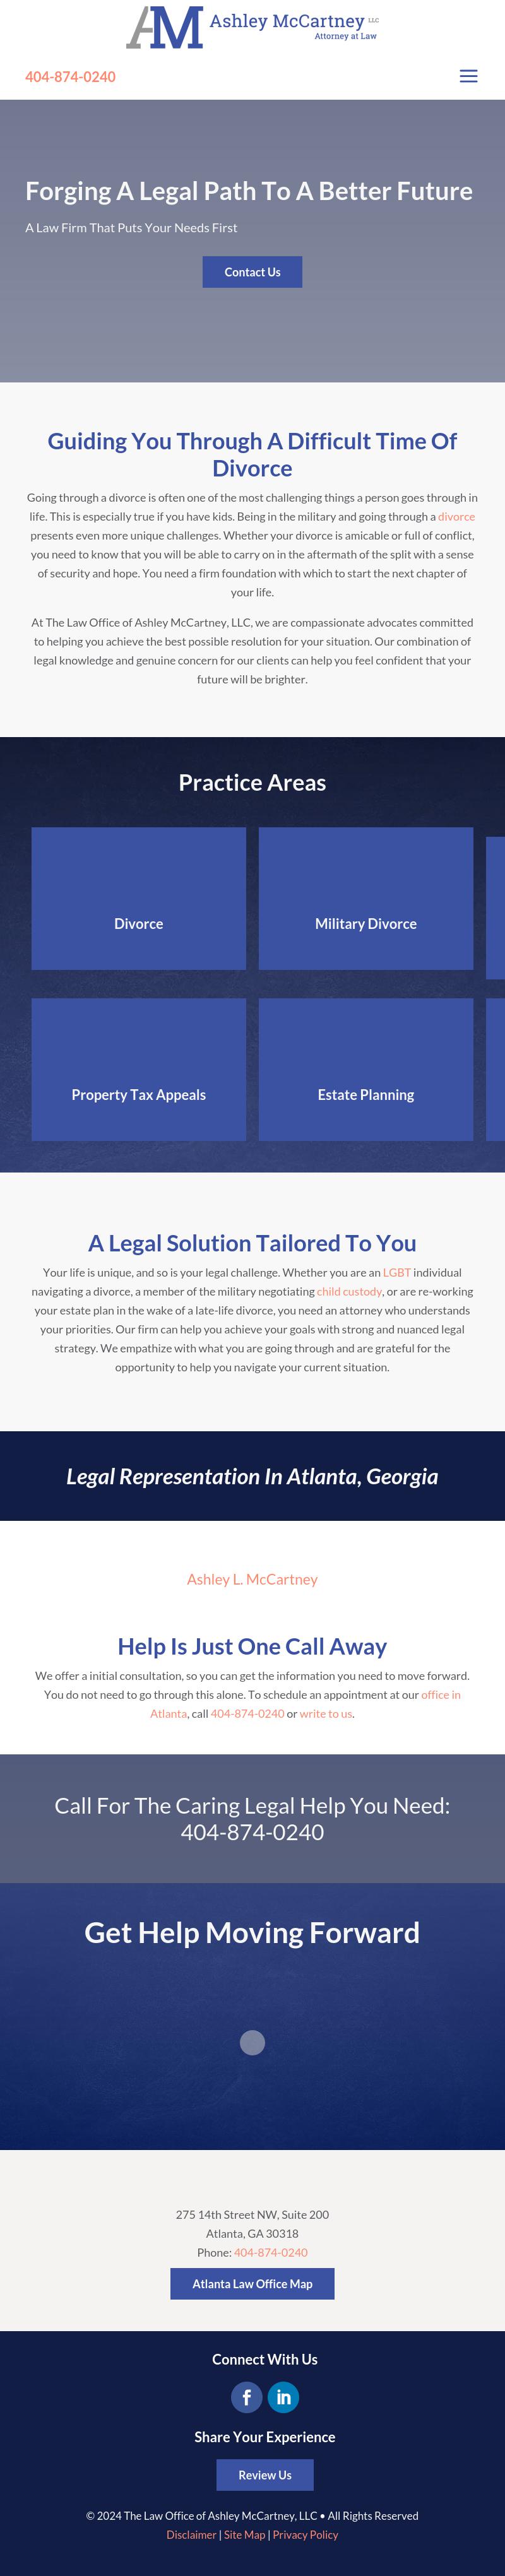 The Law Office of Ashley McCartney, LLC - Atlanta GA Lawyers